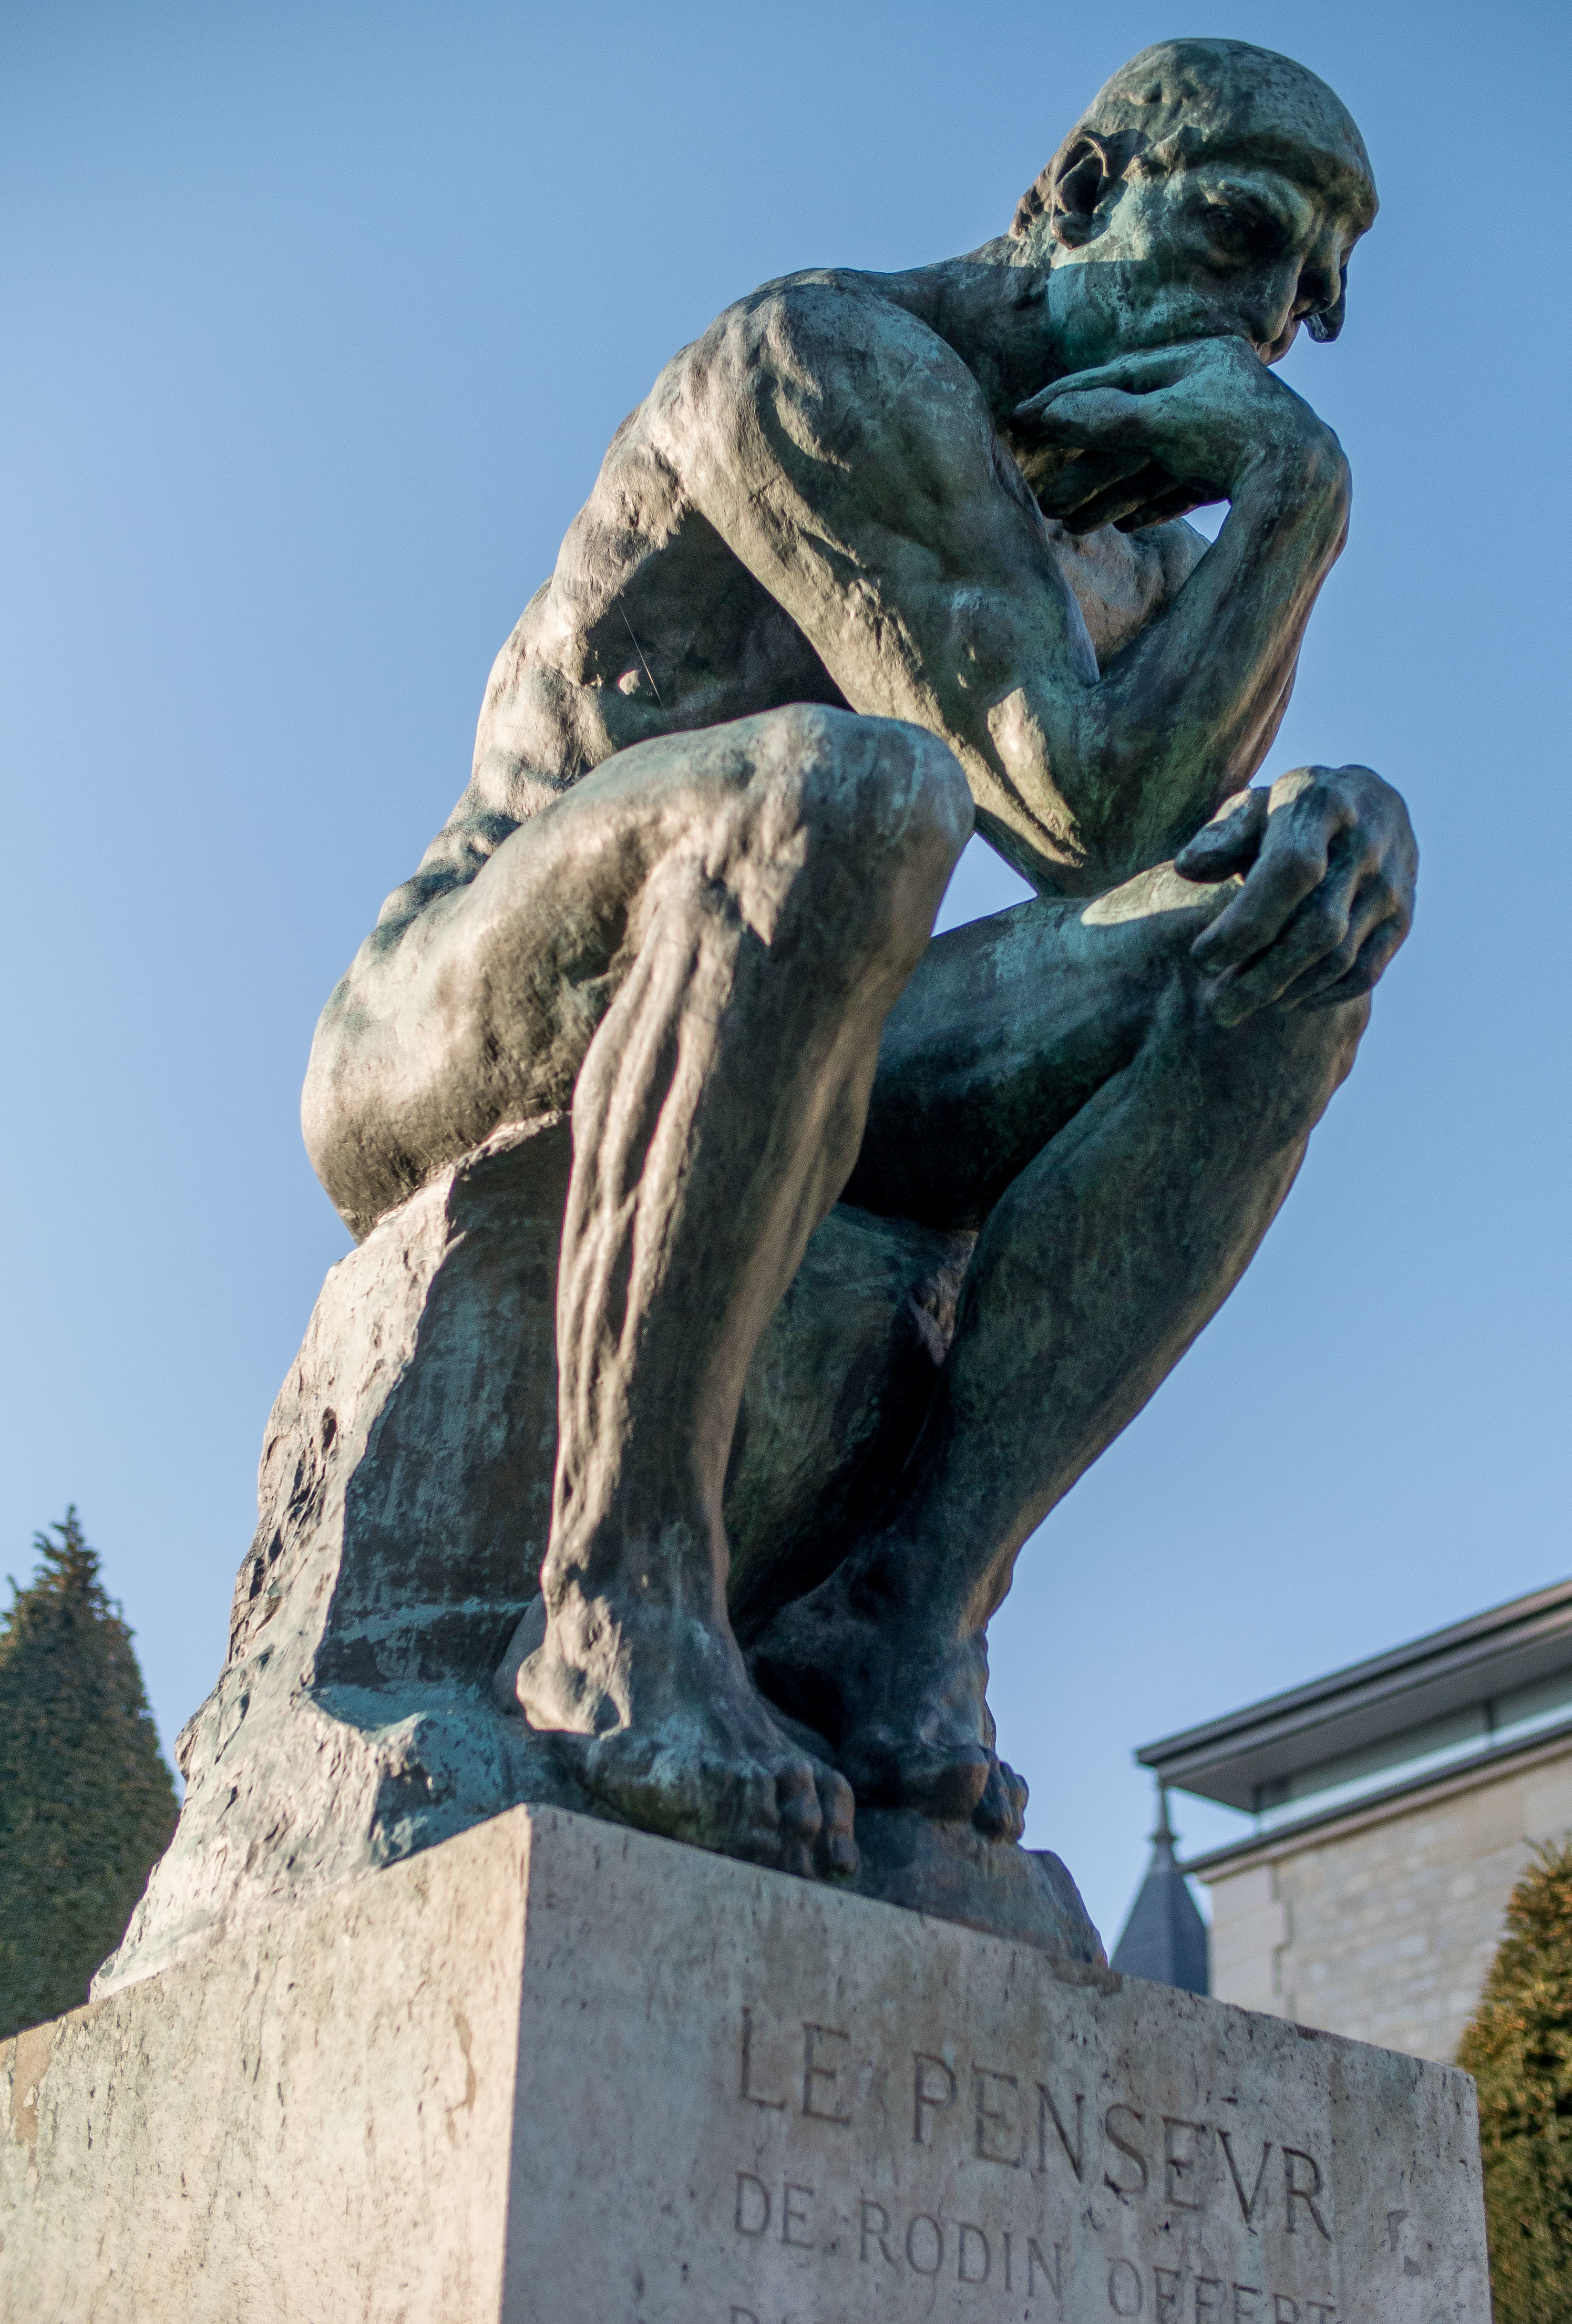 17 Le Penseur in the Jardin du Musée Rodin Paris March 2014